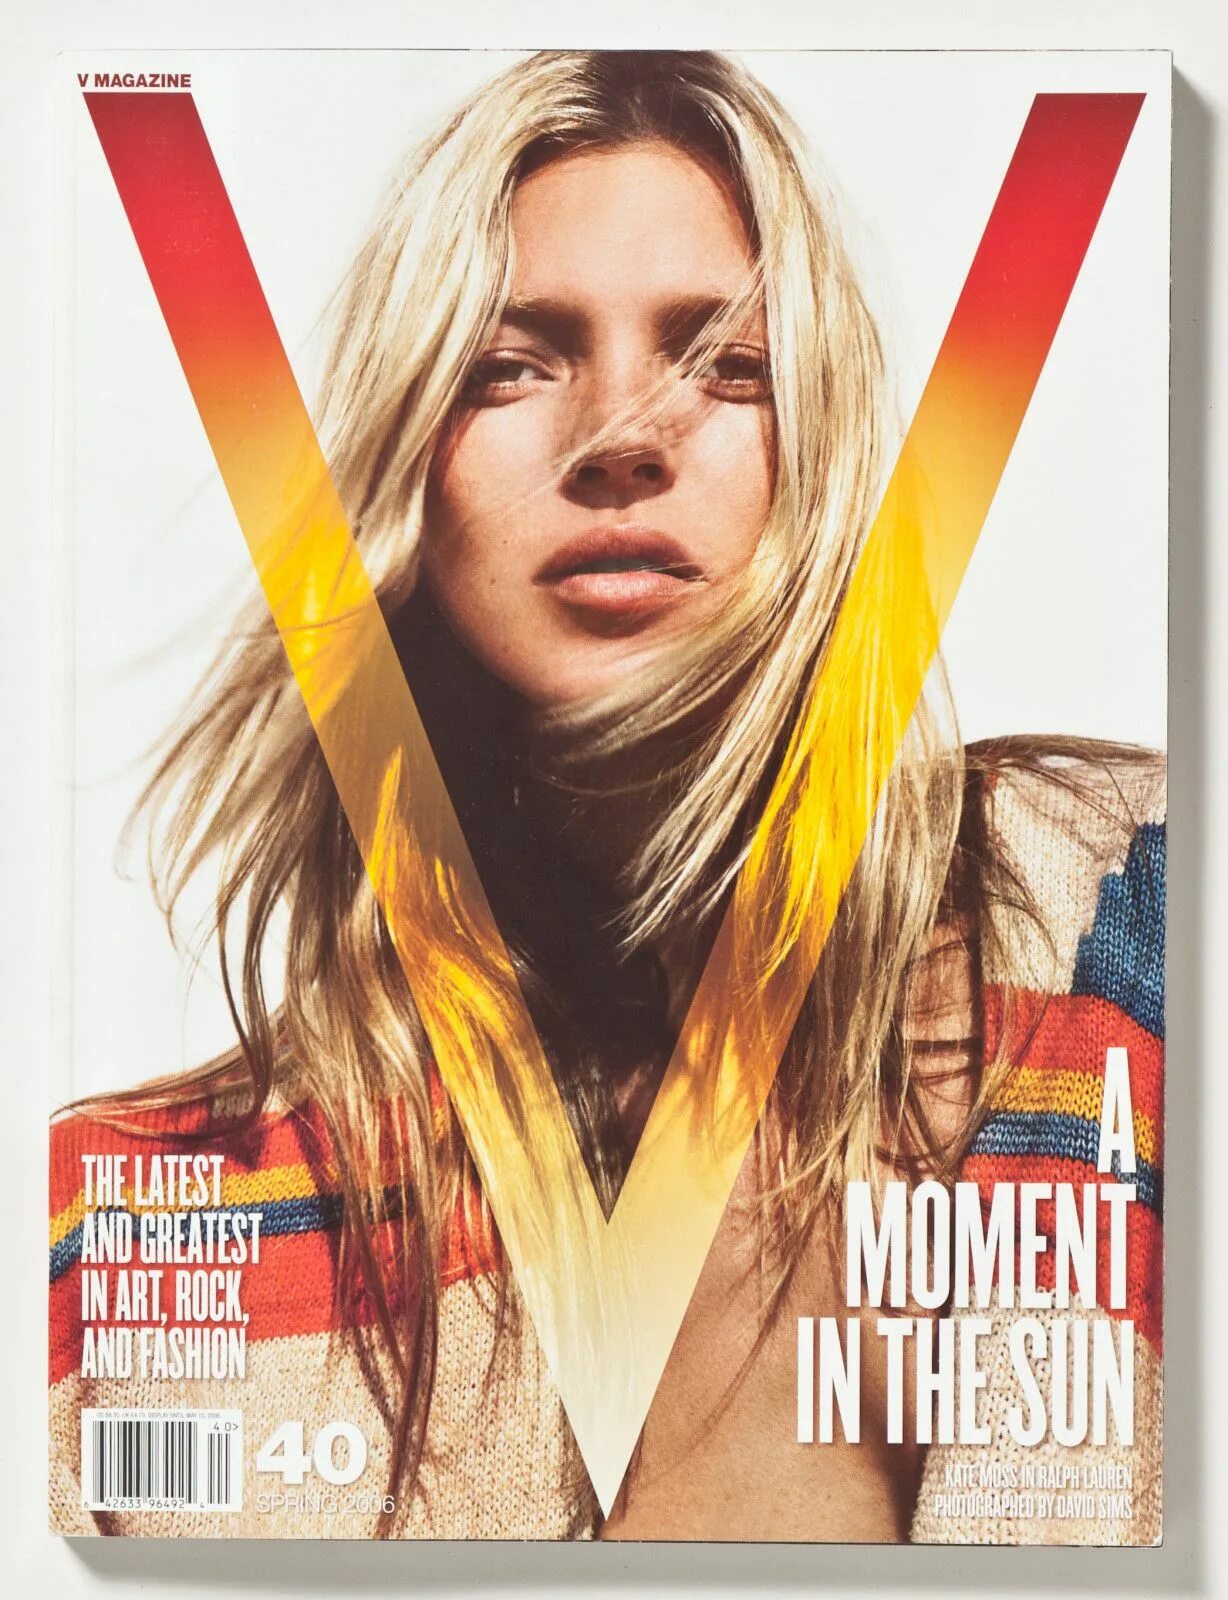 V magazine. V Magazine журнал обложки. Kate Moss журнал. Обложка для журнала. Девушка на обложке журнала.